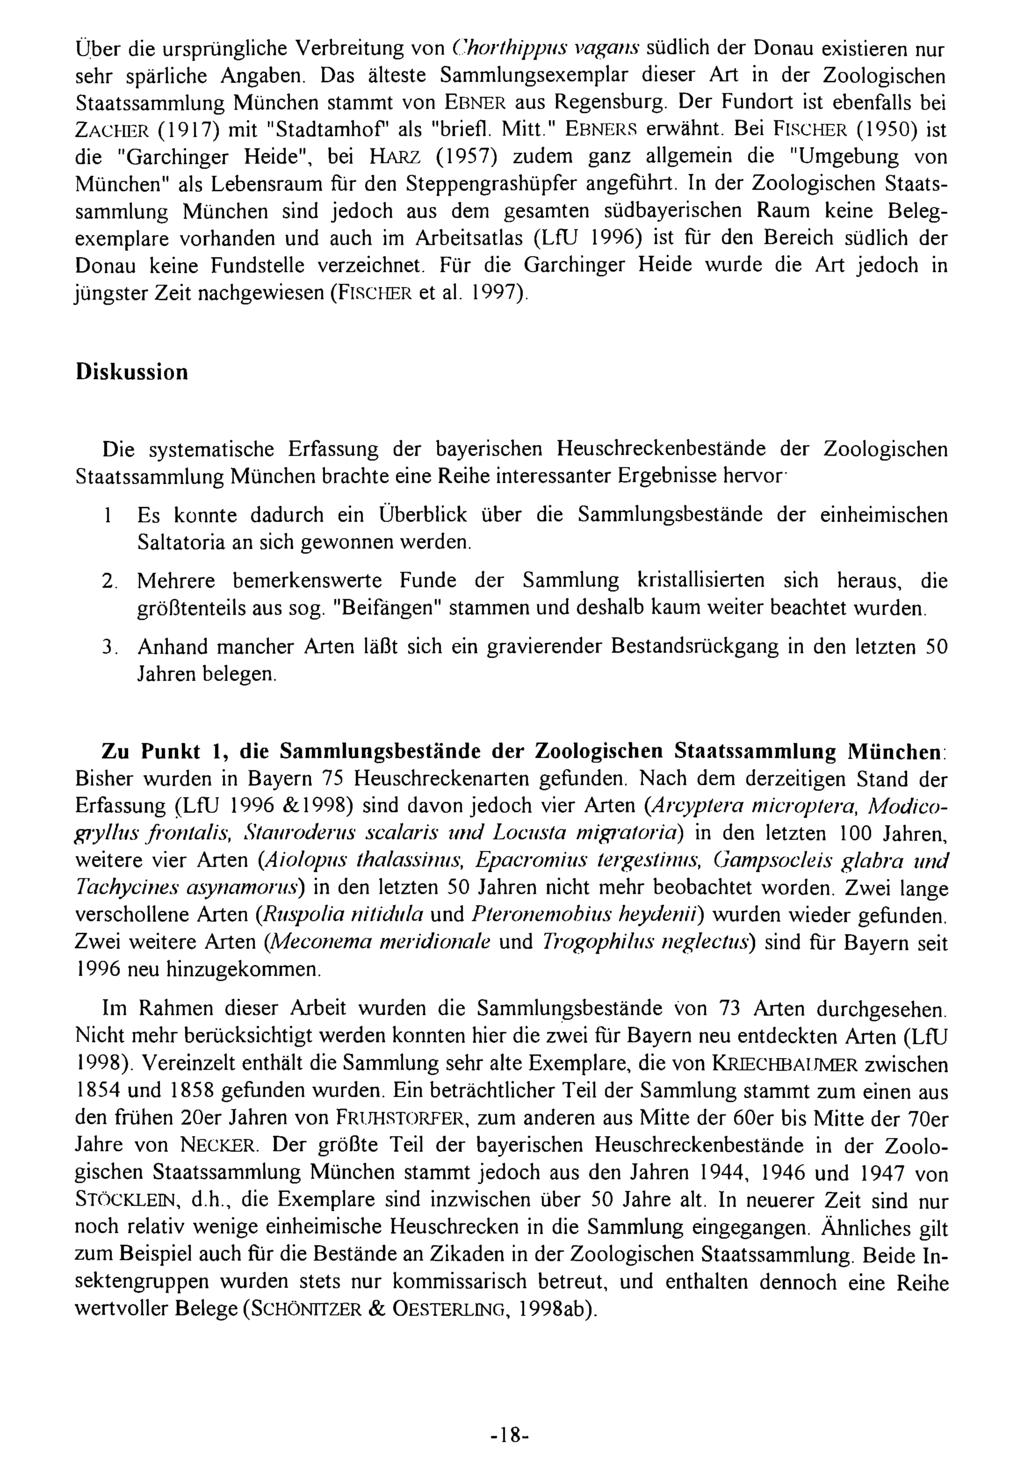 Über die ursprüngliche Naturforsch. Verbreitung Ges. von Augsburg; Chorthippus download unter vagans www.biologiezentrum.at südlich der Donau existieren nur sehr spärliche Angaben.